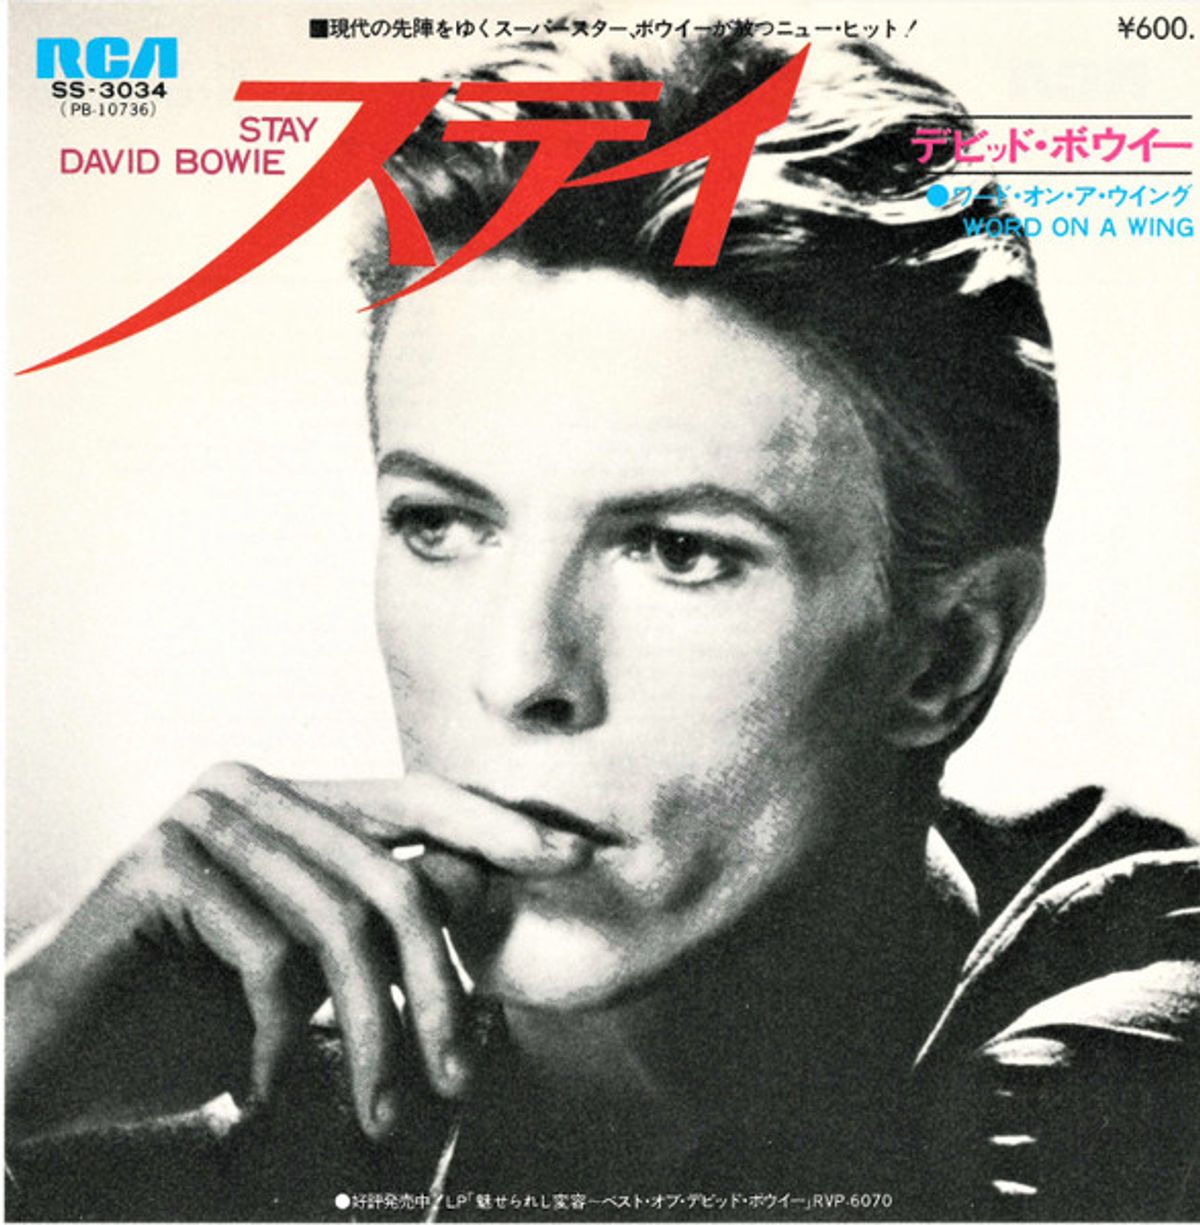 #AdrianBelew David Bowie - Stay (1978)